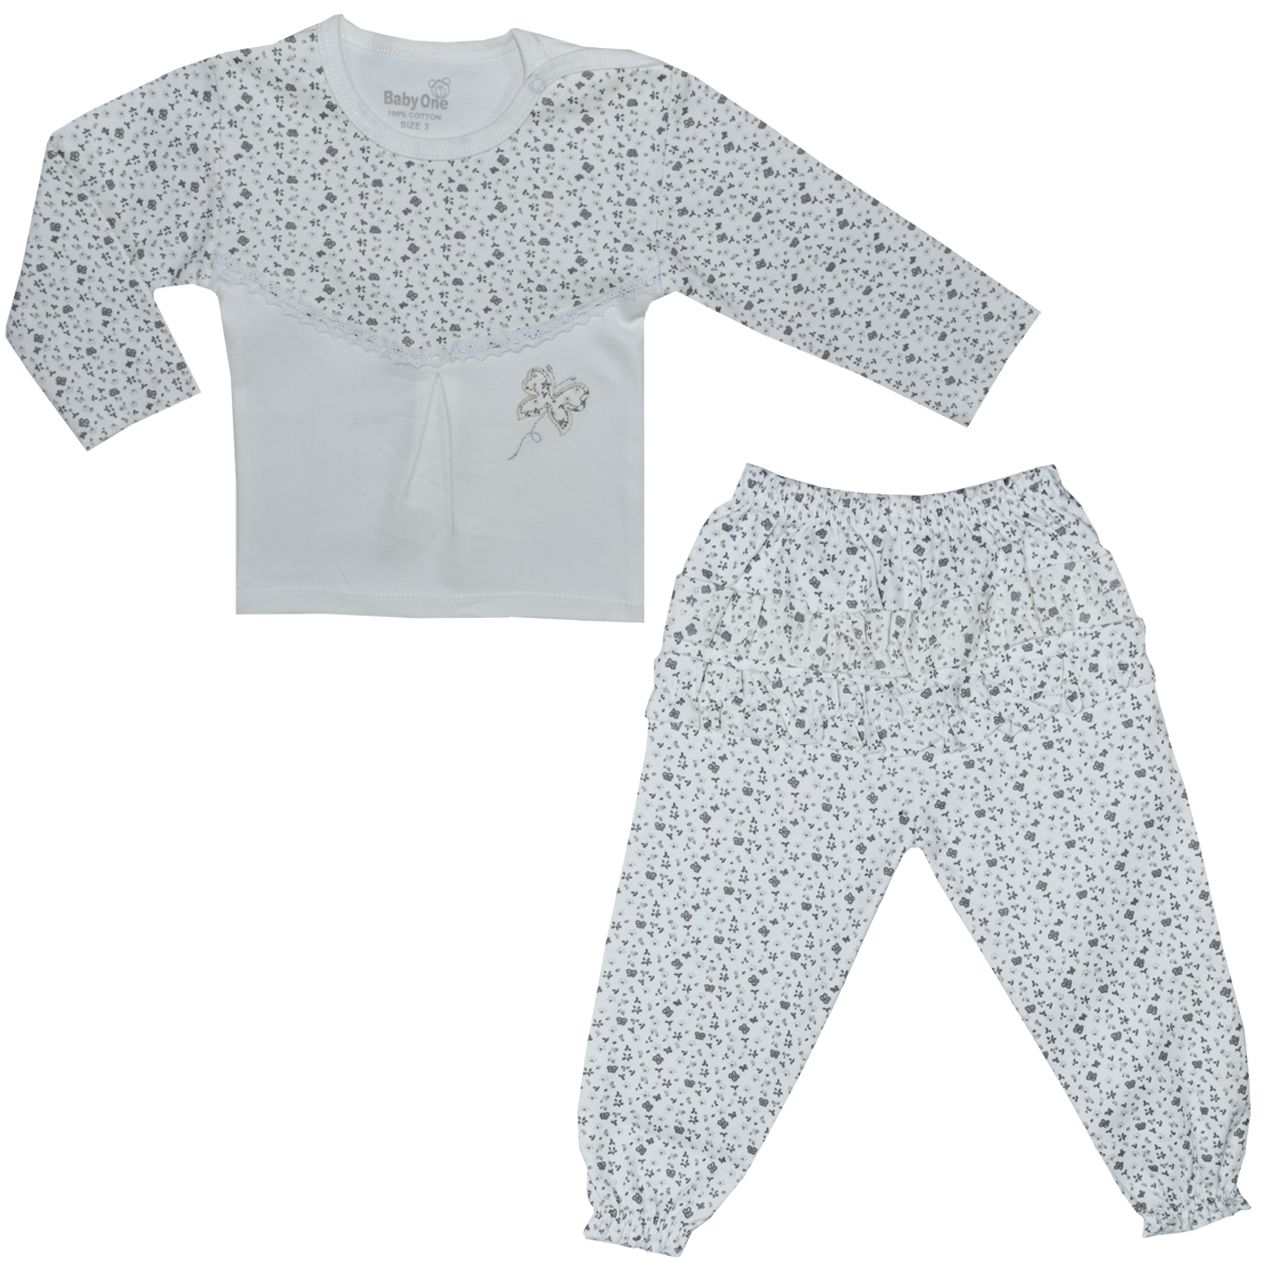 ست تی شرت و شلوار نوزادی بی بی وان مدل پروانه کد 1 -  - 1